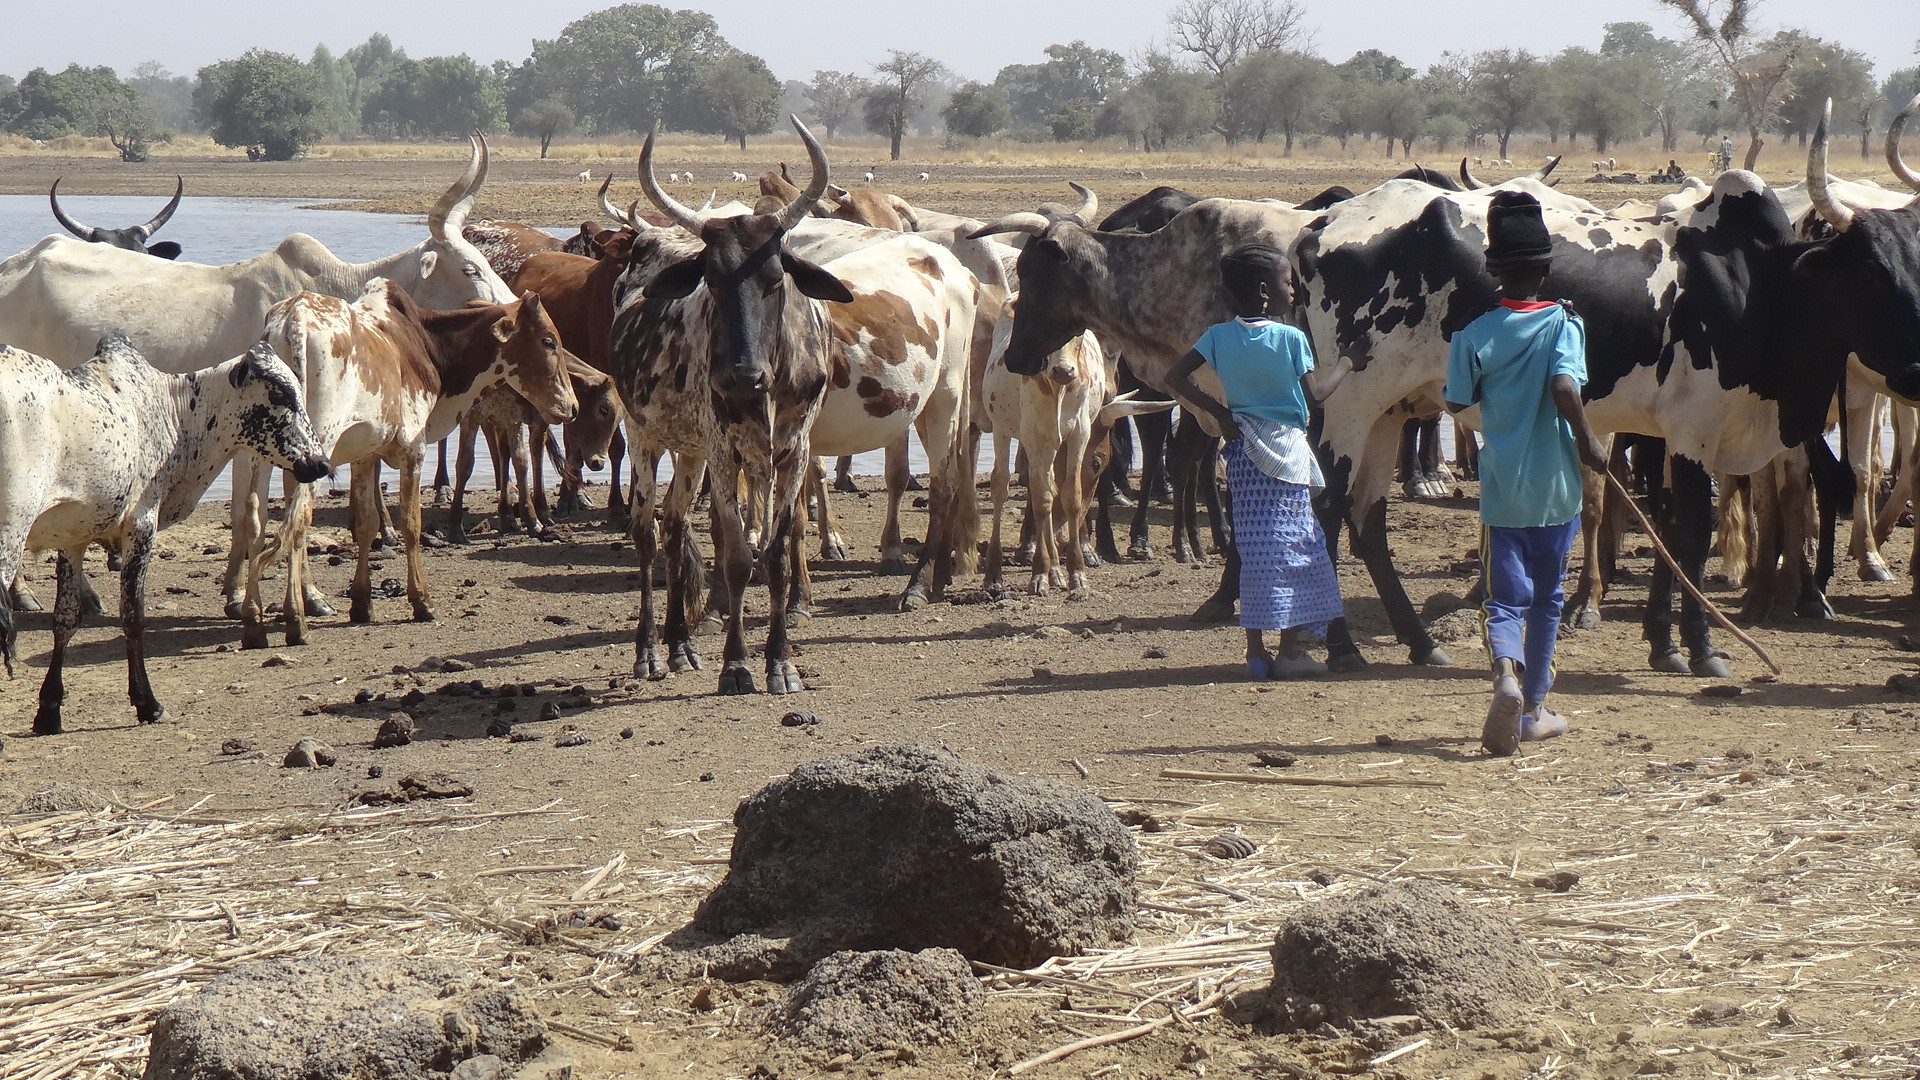 Clash between herders, farmers in Chad leaves 17 dead